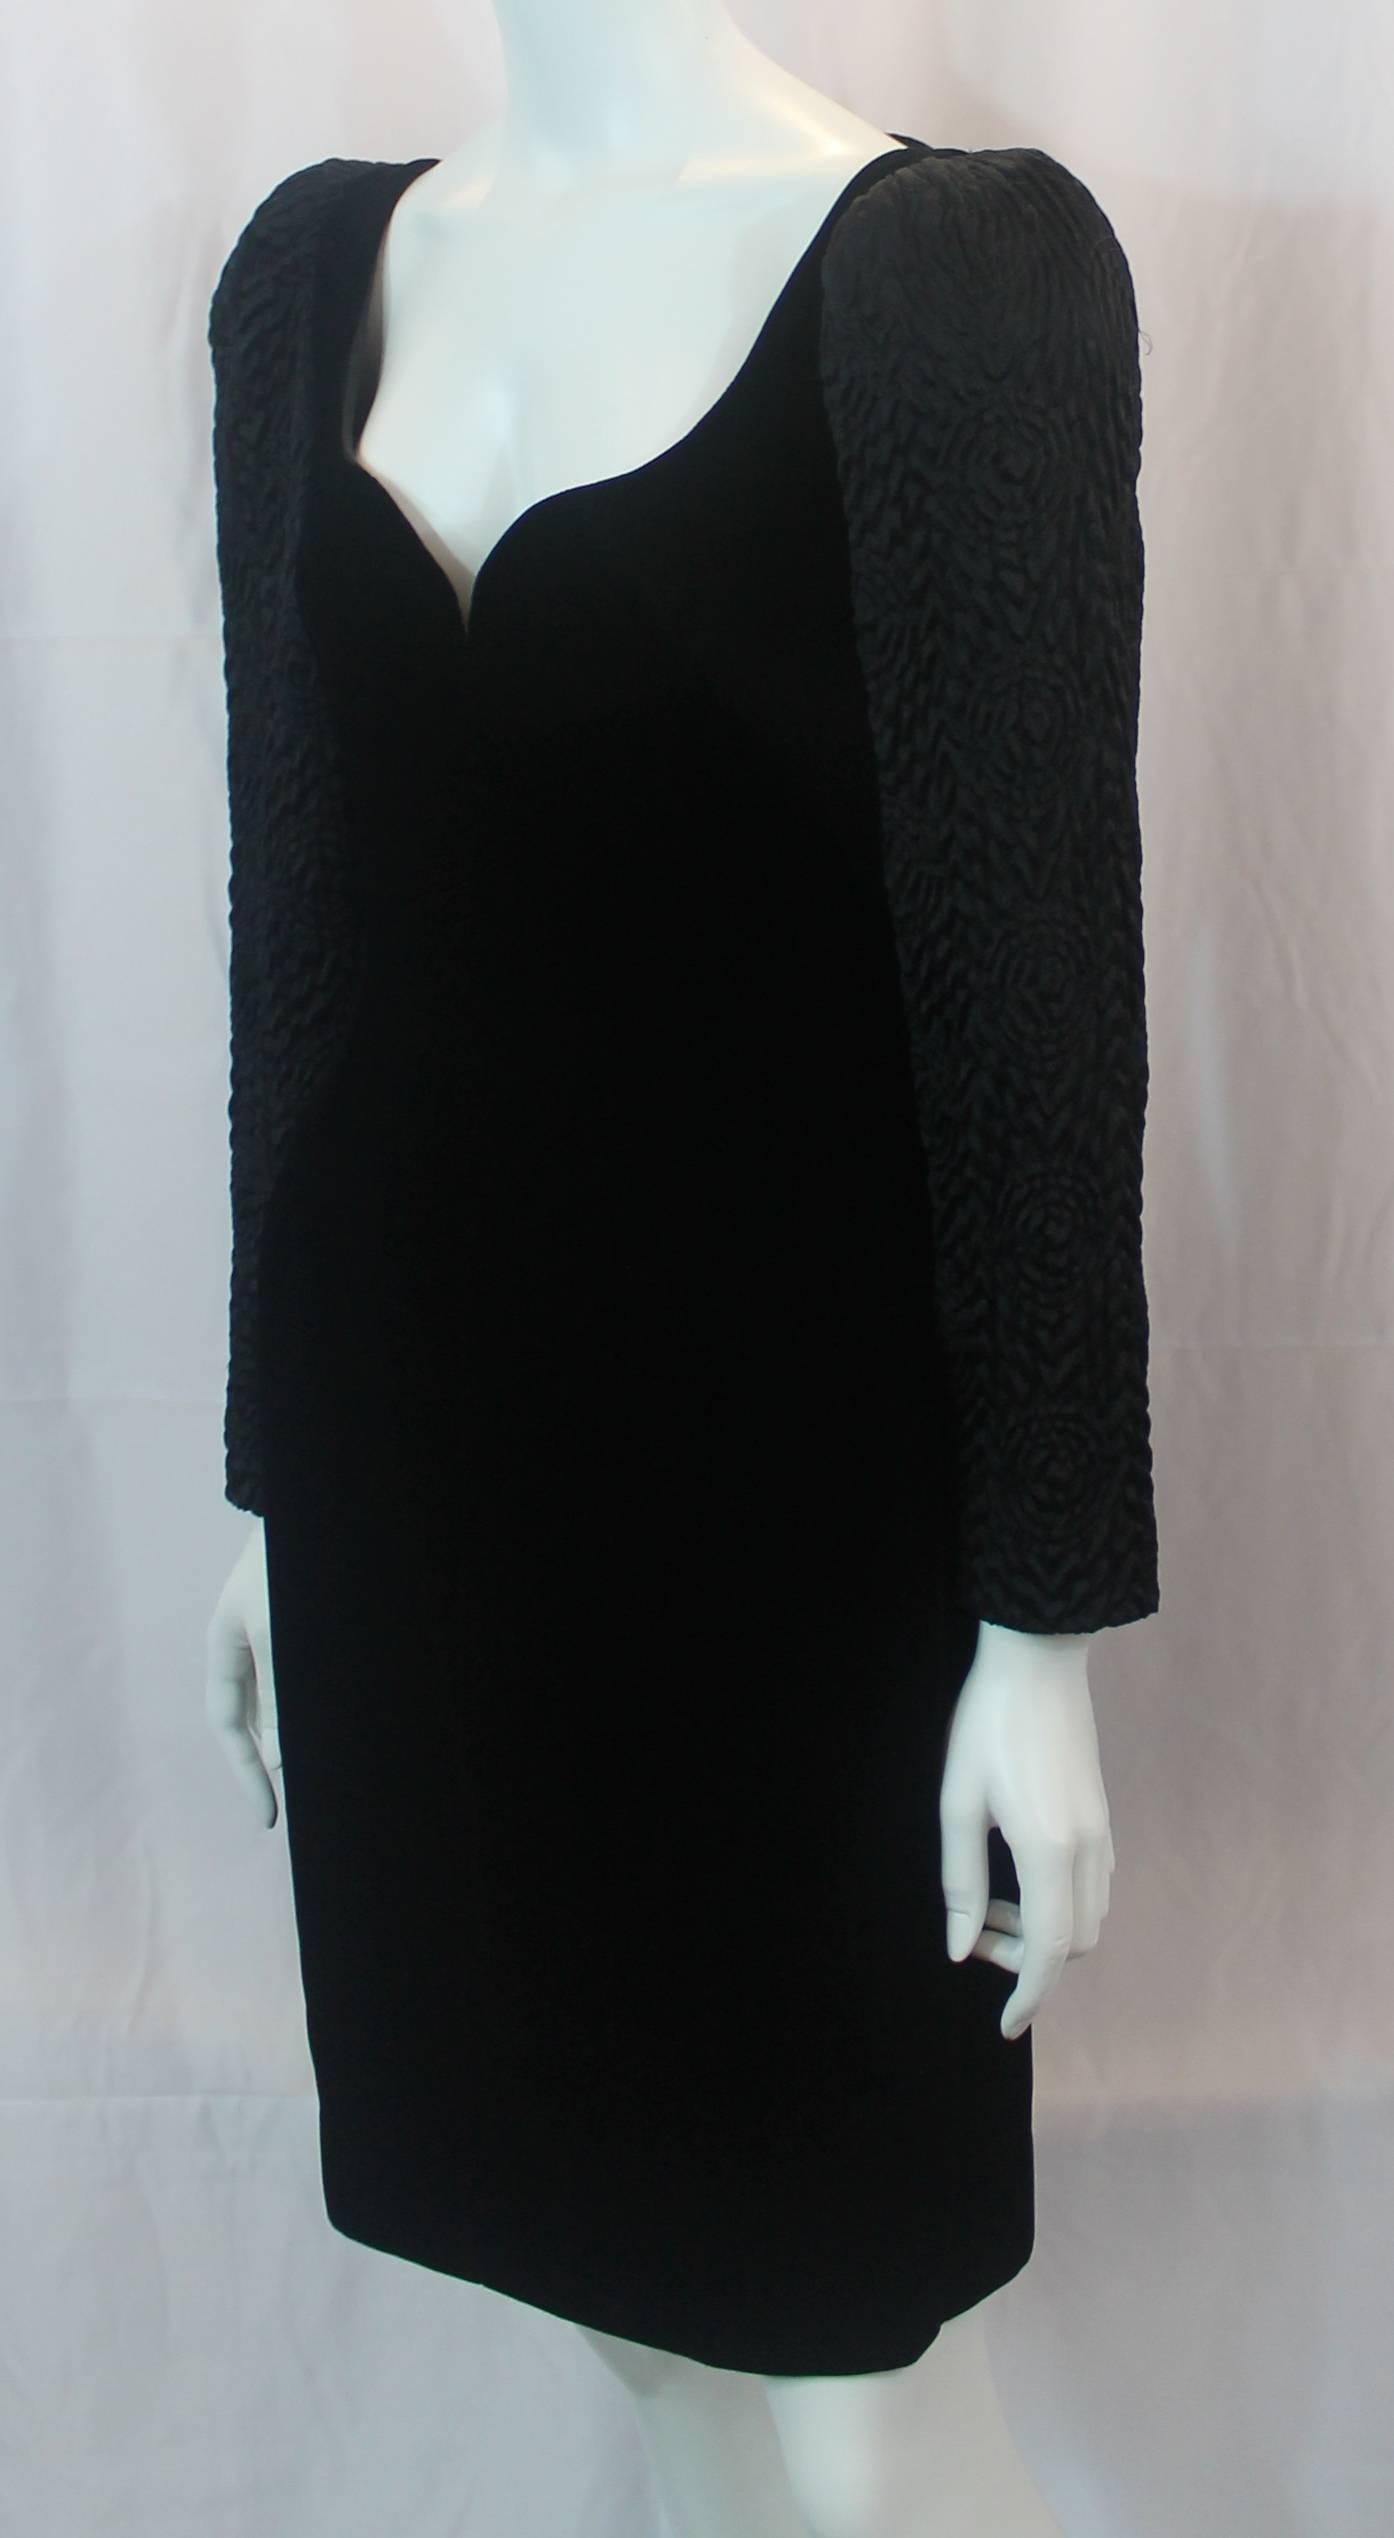 Robe de soirée Vintage Adele Simpson en velours noir et soie - circa 1980. Cette robe vintage noire a un décolleté en cœur, un corsage en velours, des manches longues en soie matelassée, des épaulettes et une fermeture éclair dans le dos. Il est en